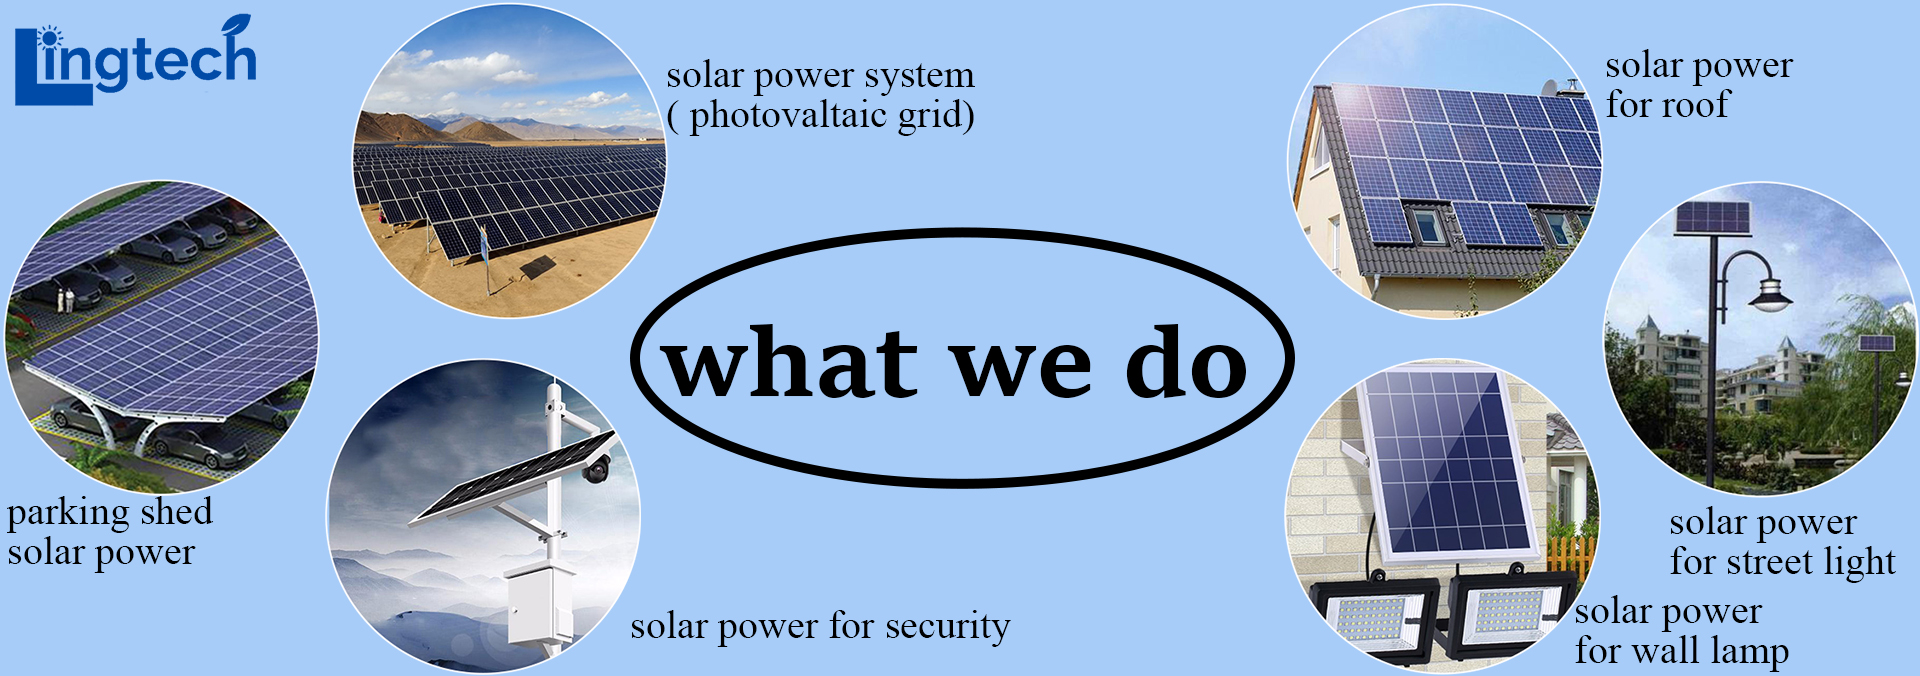 450W solar panel, shingled solar panel, solar blanket, solar battery, pv battery